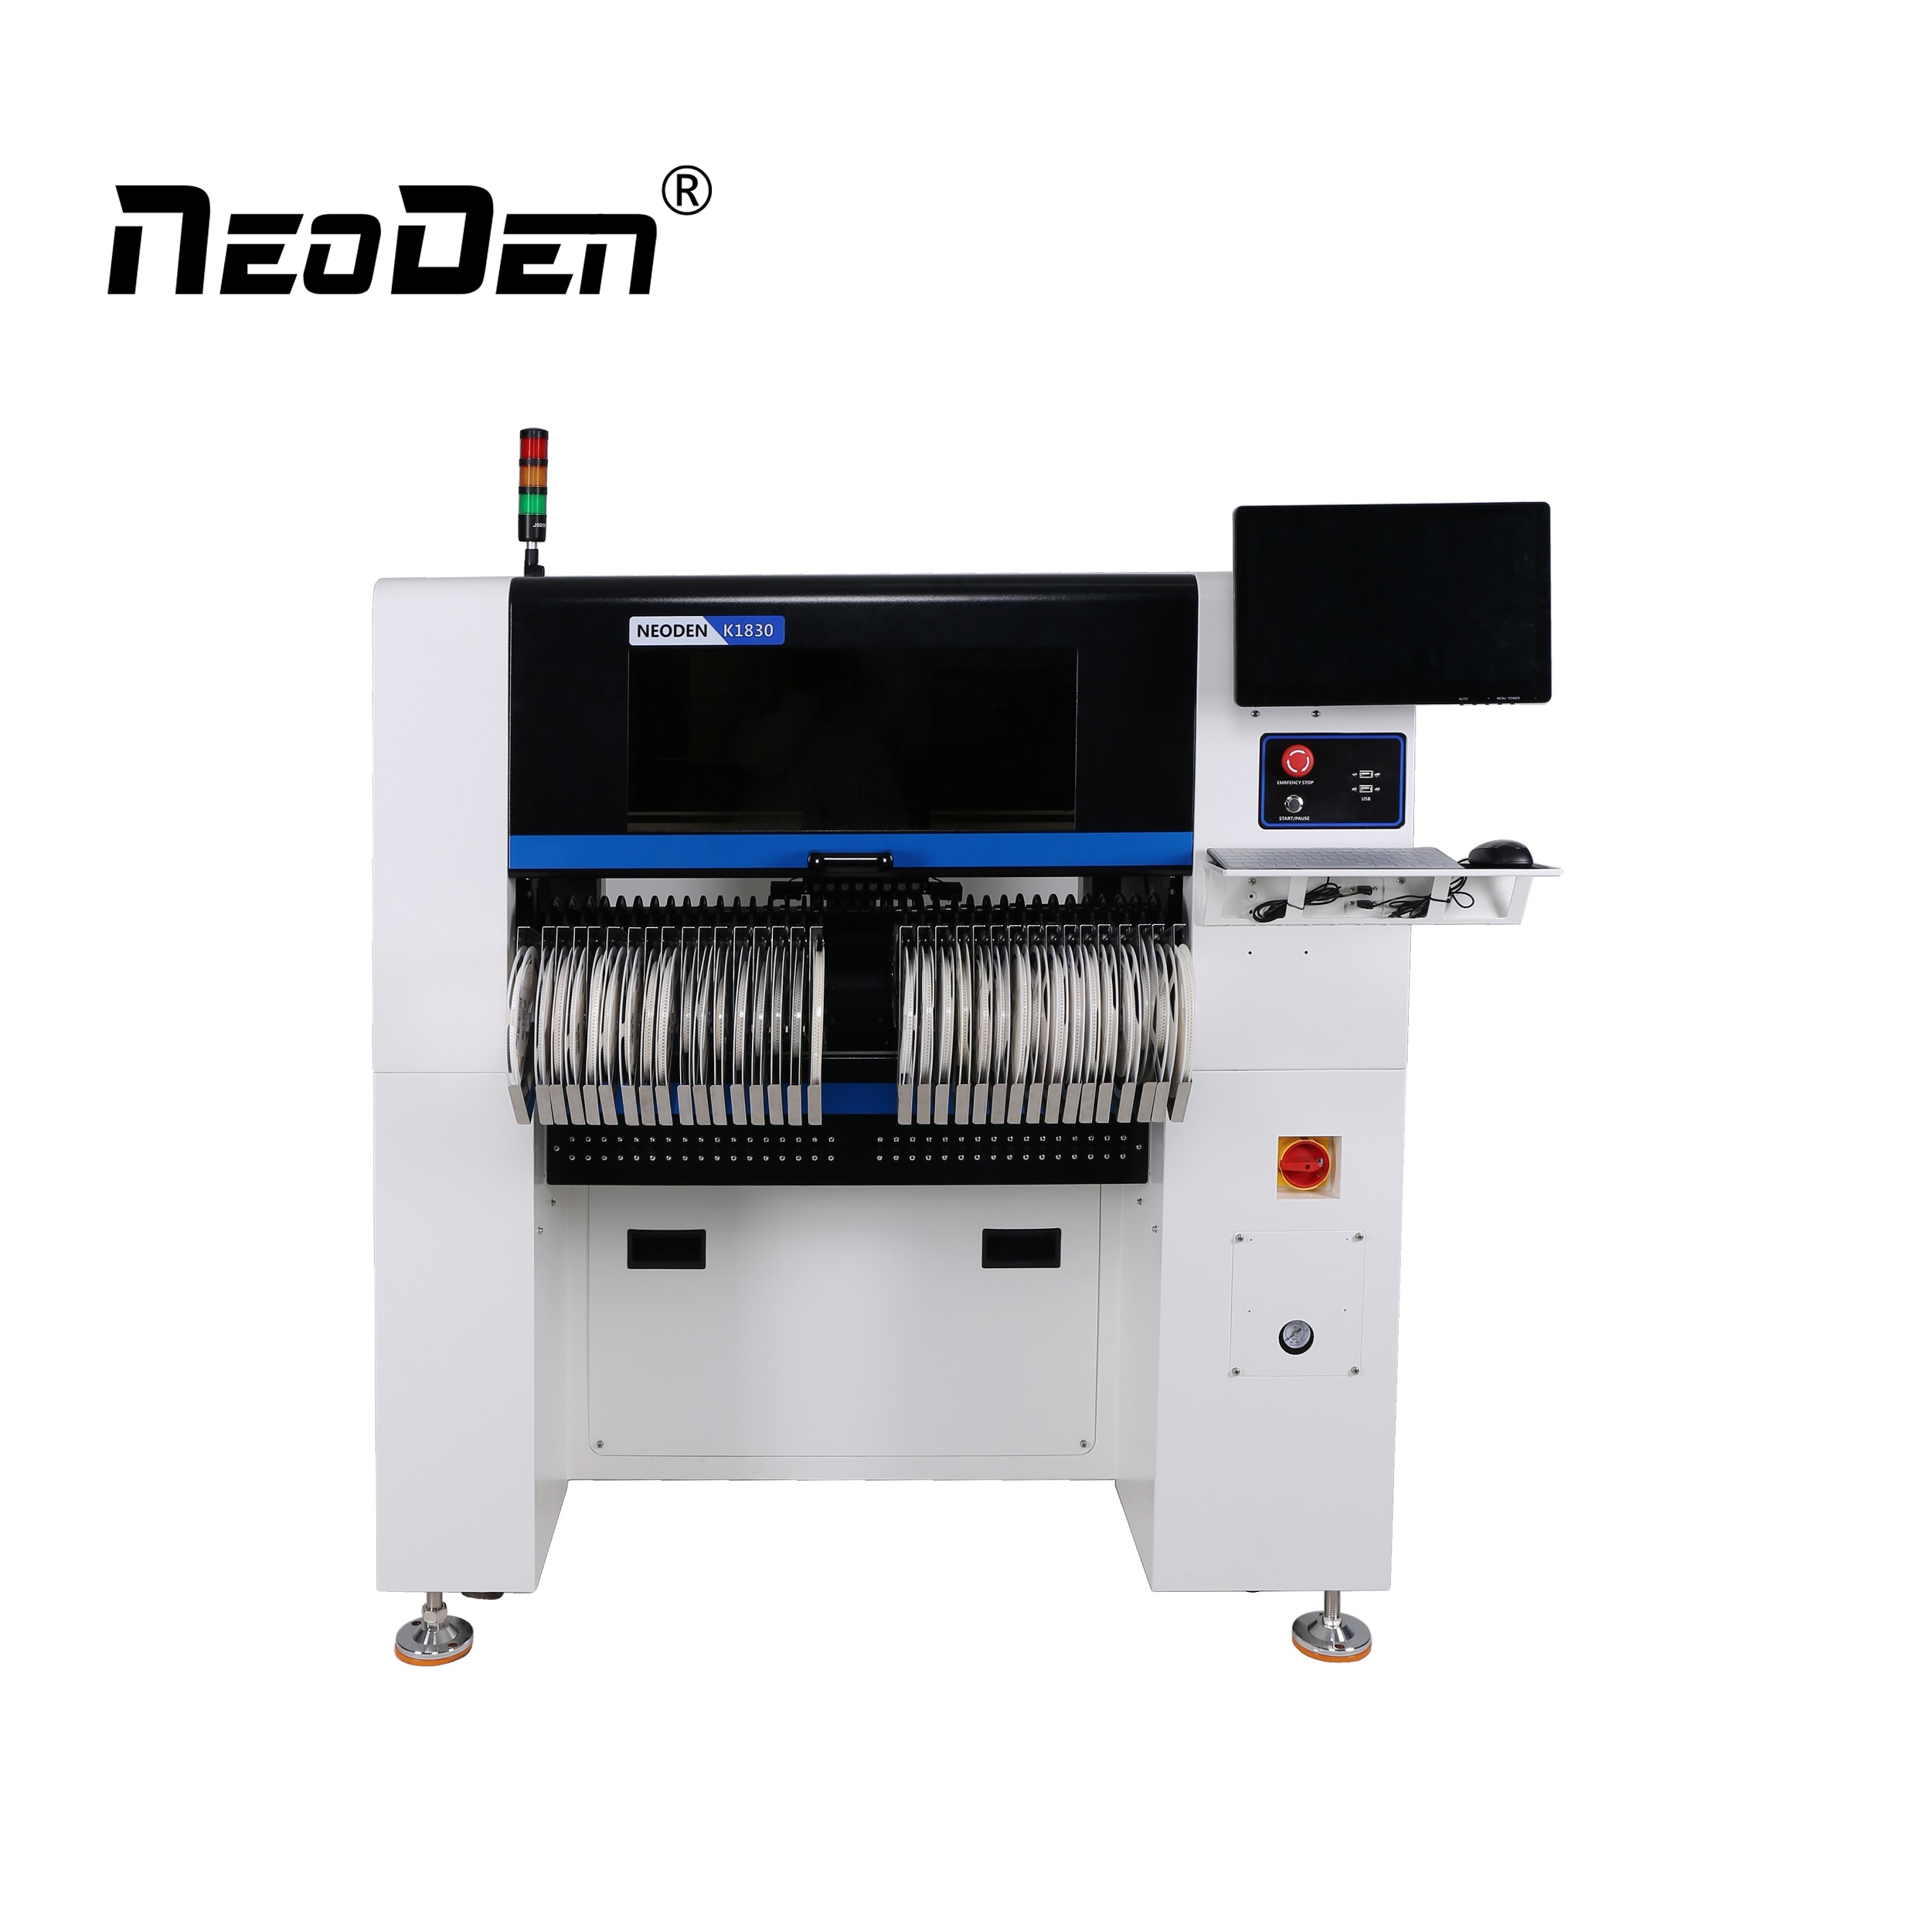 OEM/ODM Manufacturer Smd Led Mounting Machine - Smt Mounter Machine NeoDen K1830 – Neoden